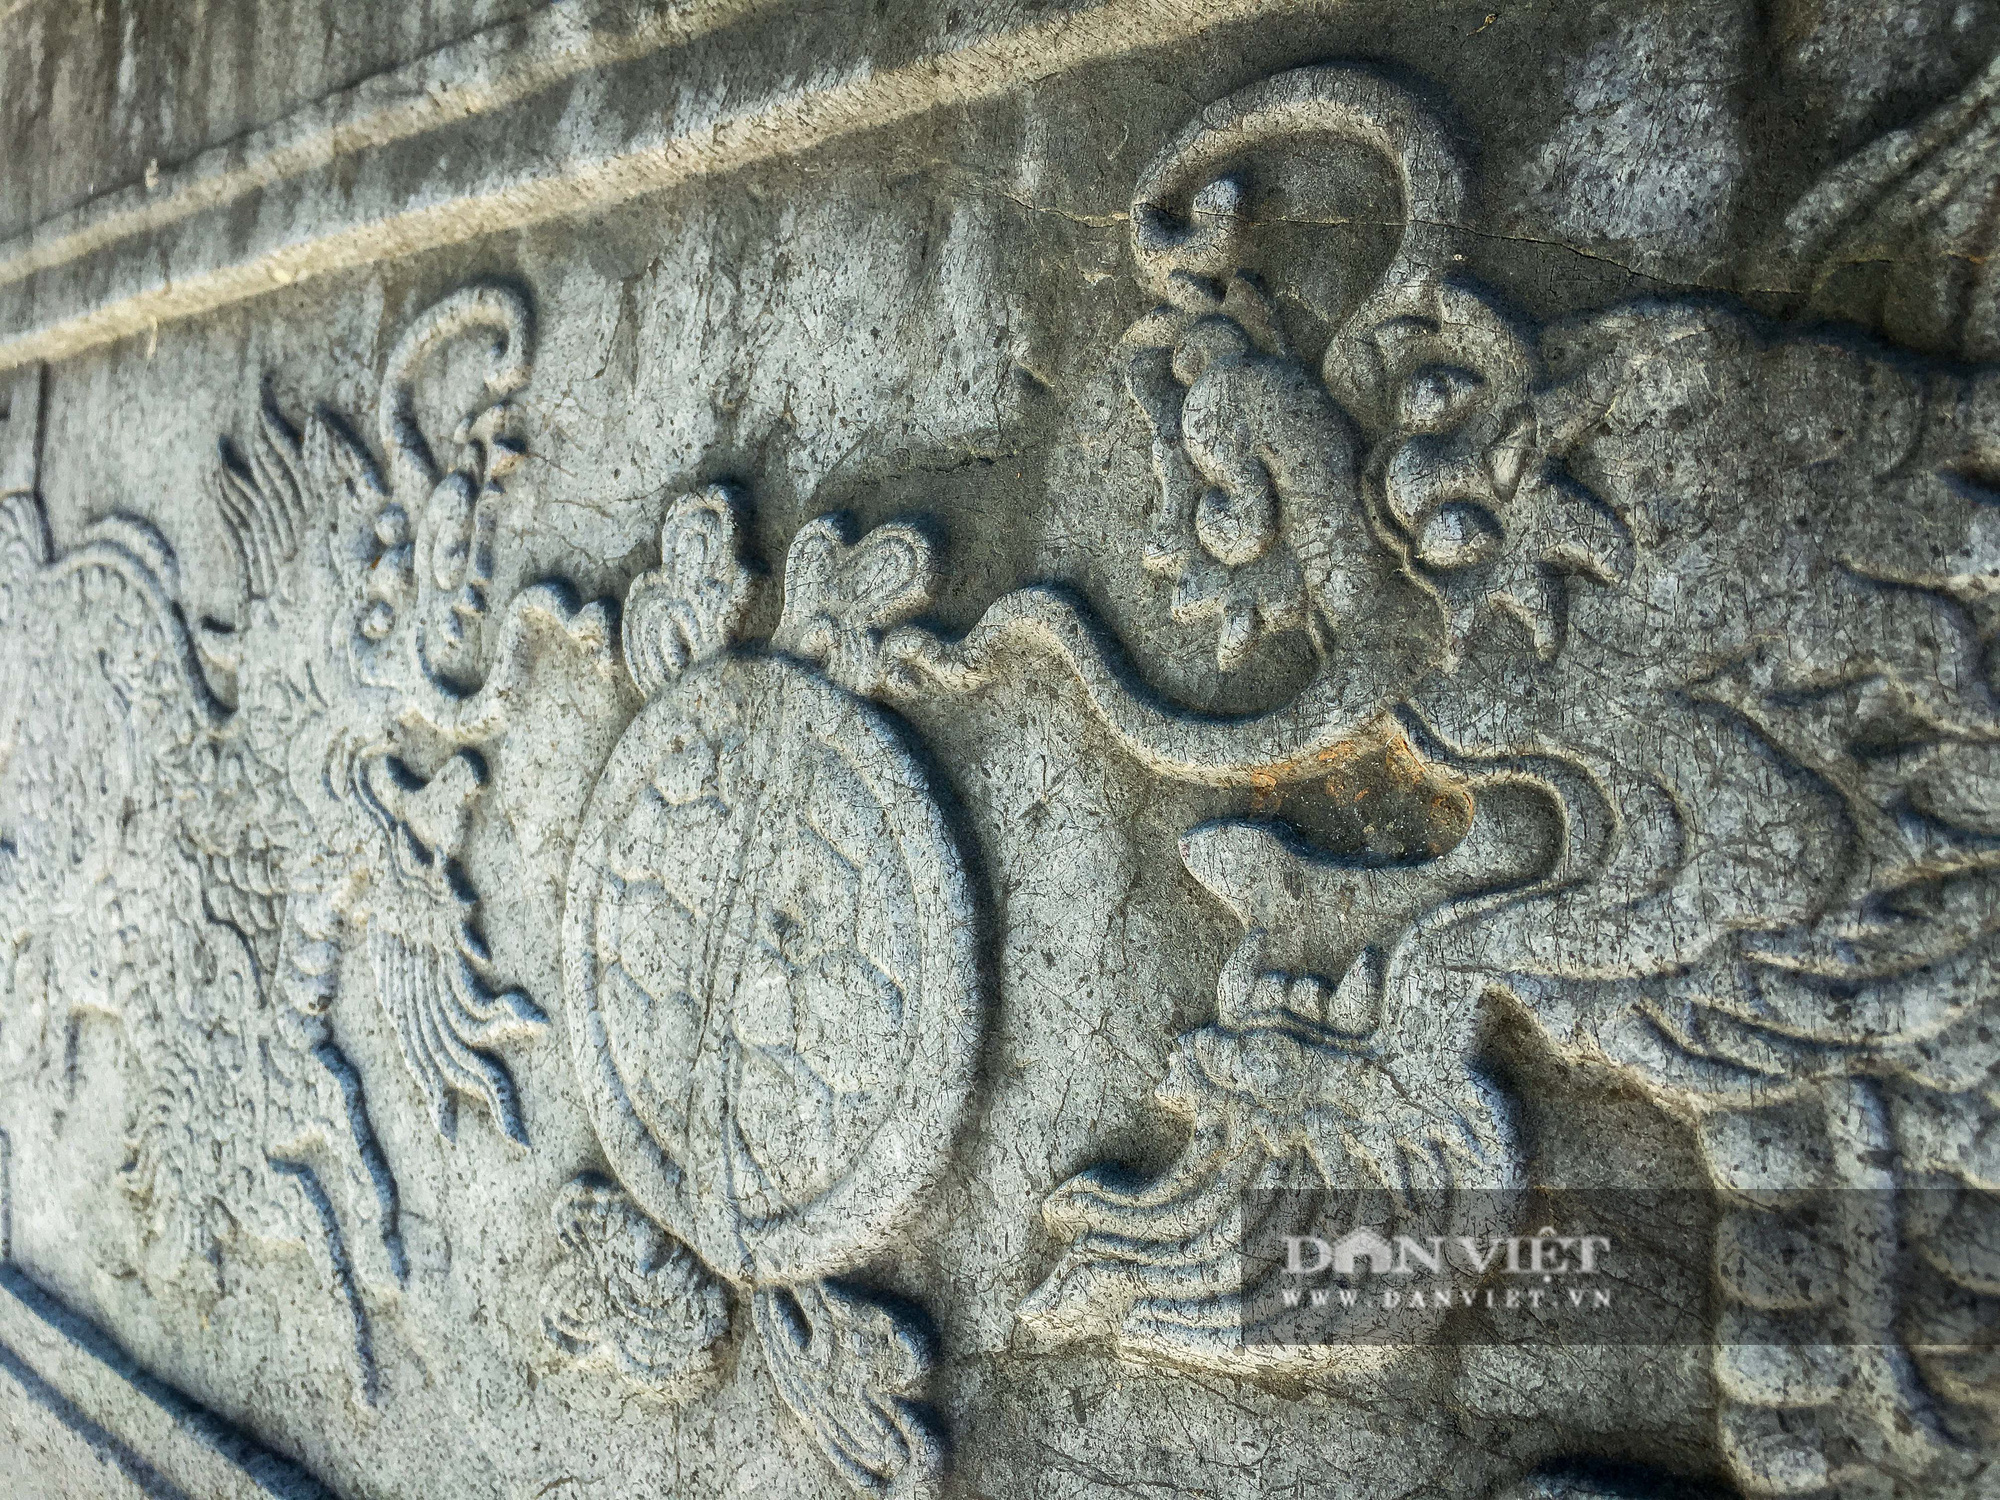 Bí ẩn lăng mộ đá ở Hà Nội bị 2 trận lũ lớn vùi lấp suốt hàng trăm năm - Ảnh 7.